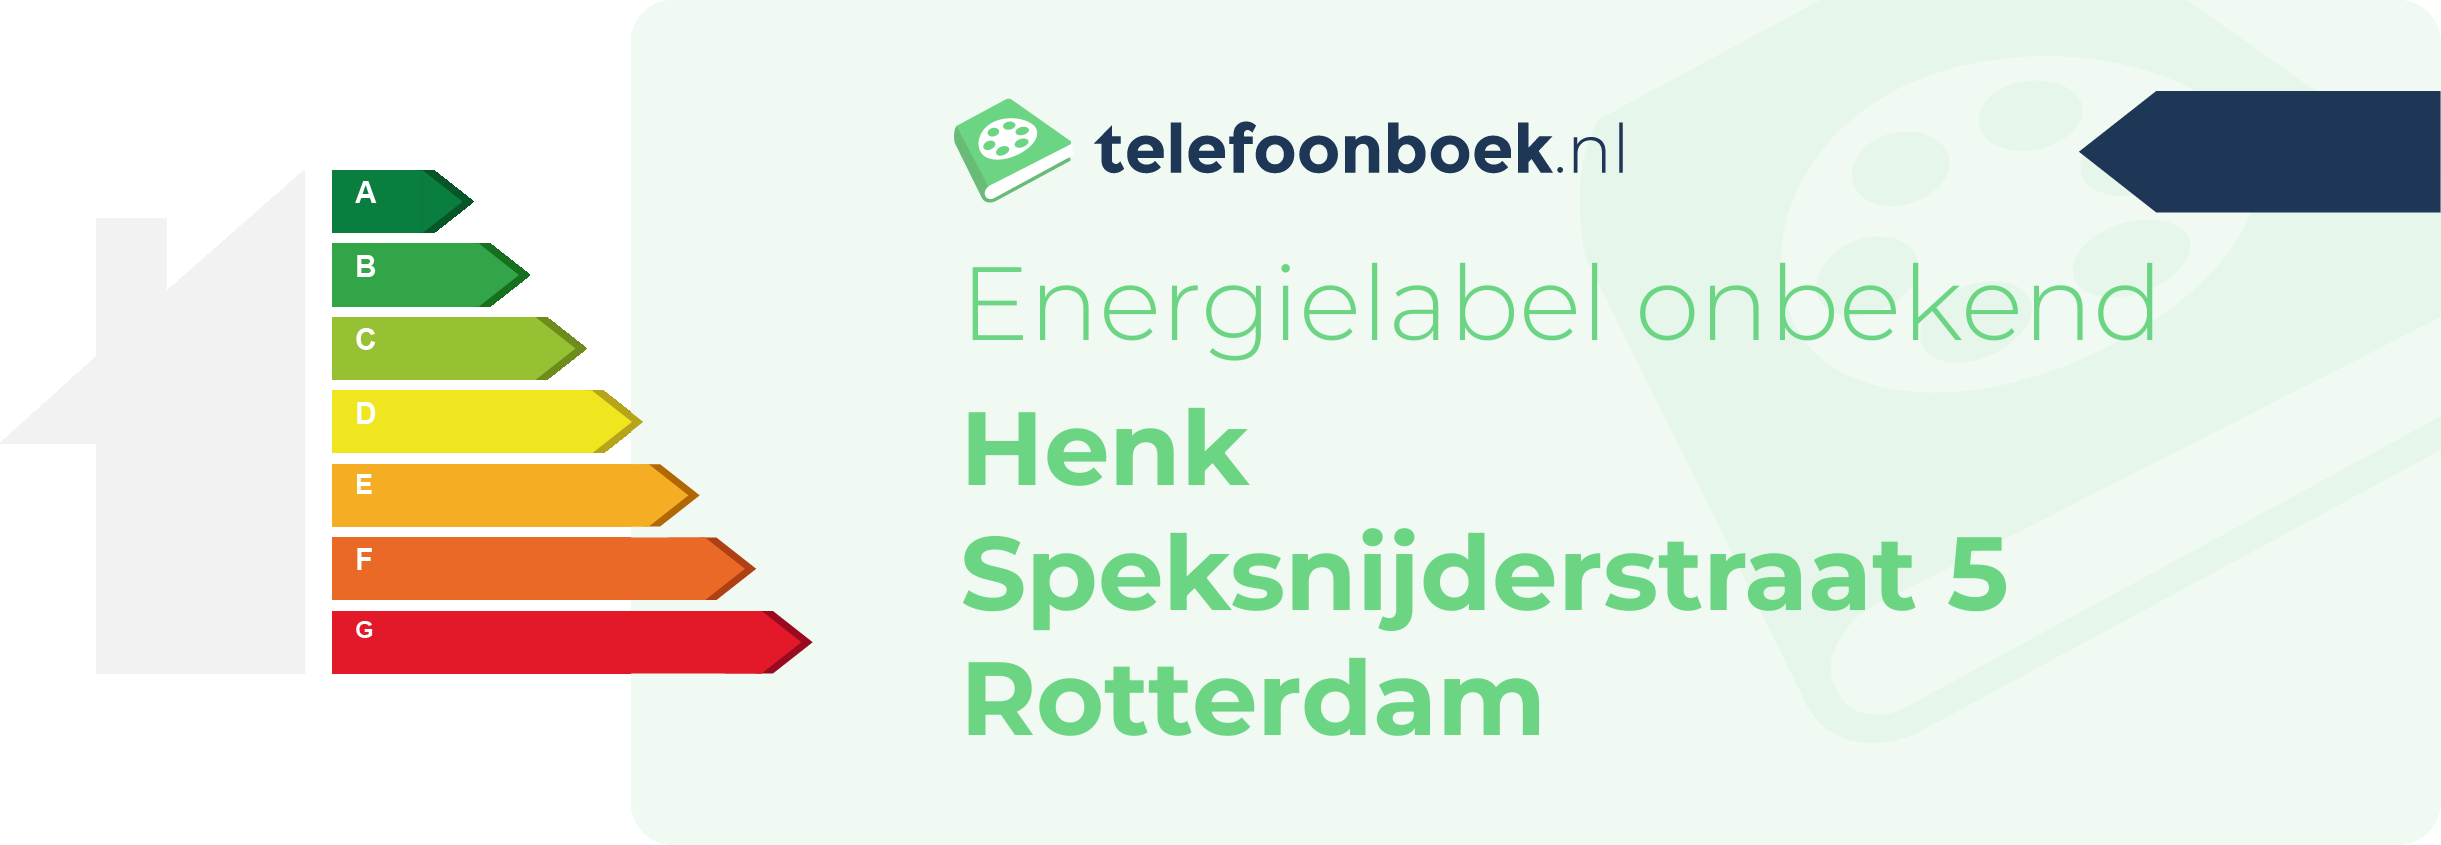 Energielabel Henk Speksnijderstraat 5 Rotterdam